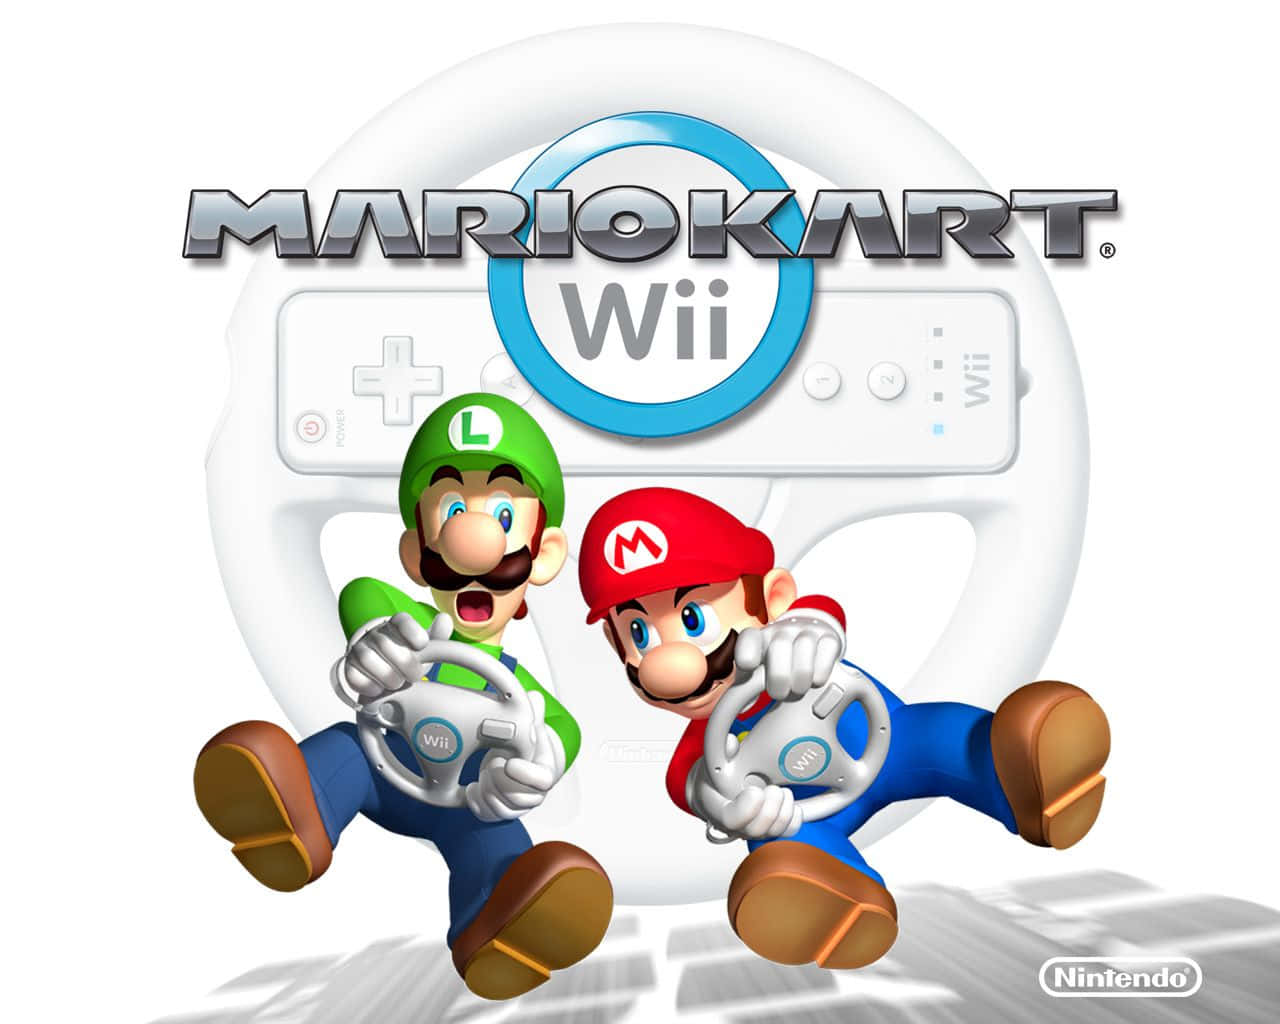 Mario and Luigi speeding around a tight bend in Mario Kart